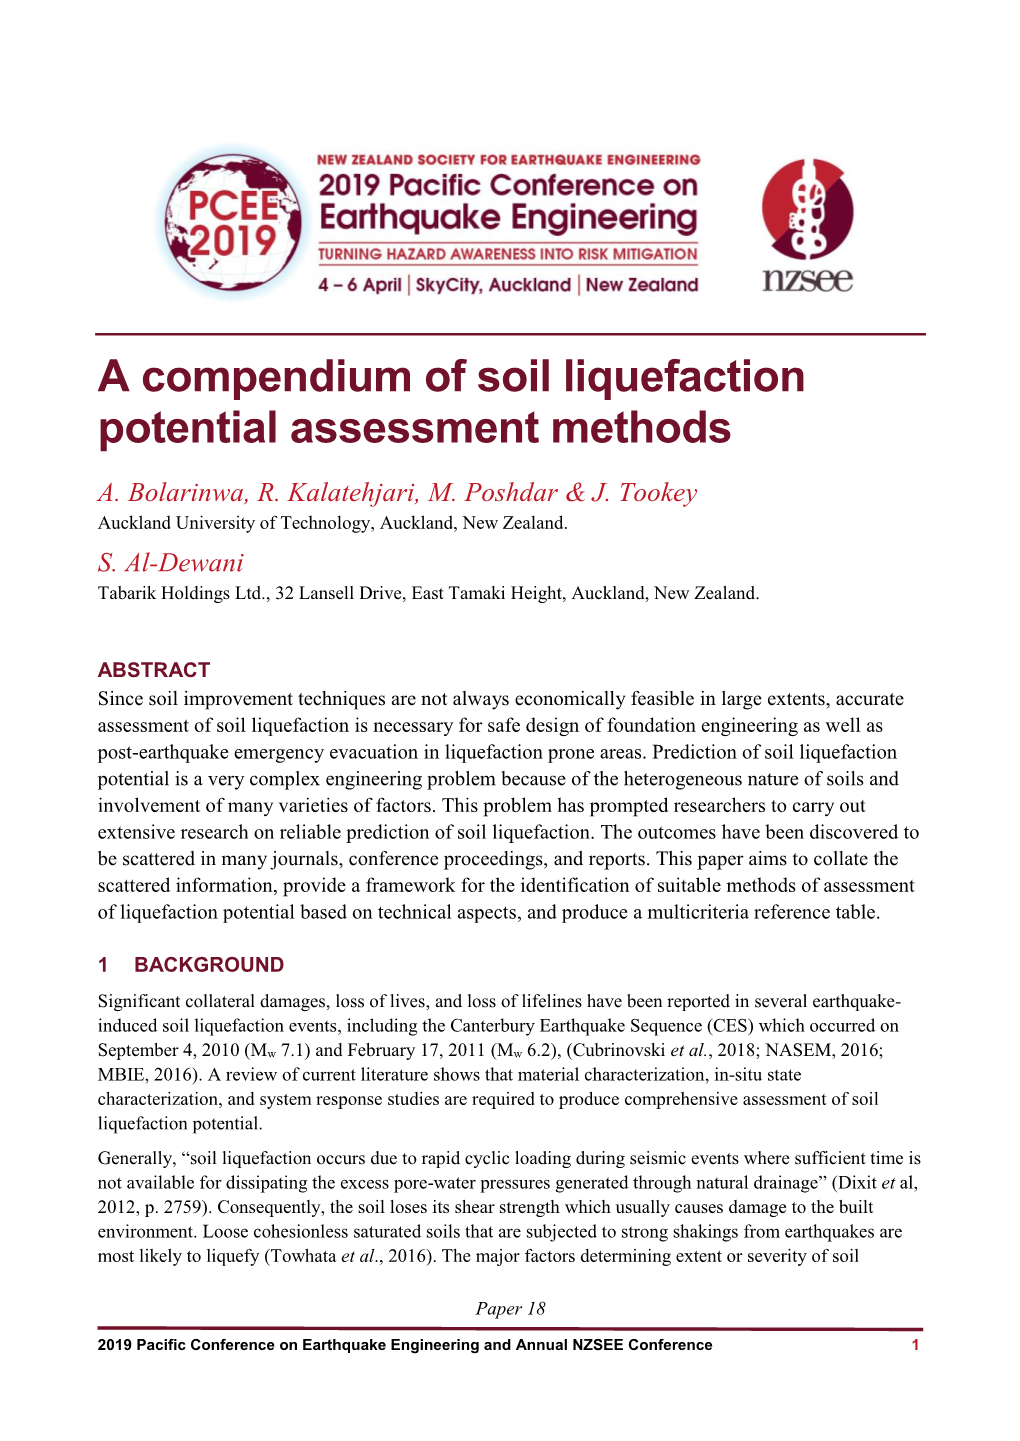 A Compendium of Soil Liquefaction Potential Assessment Methods